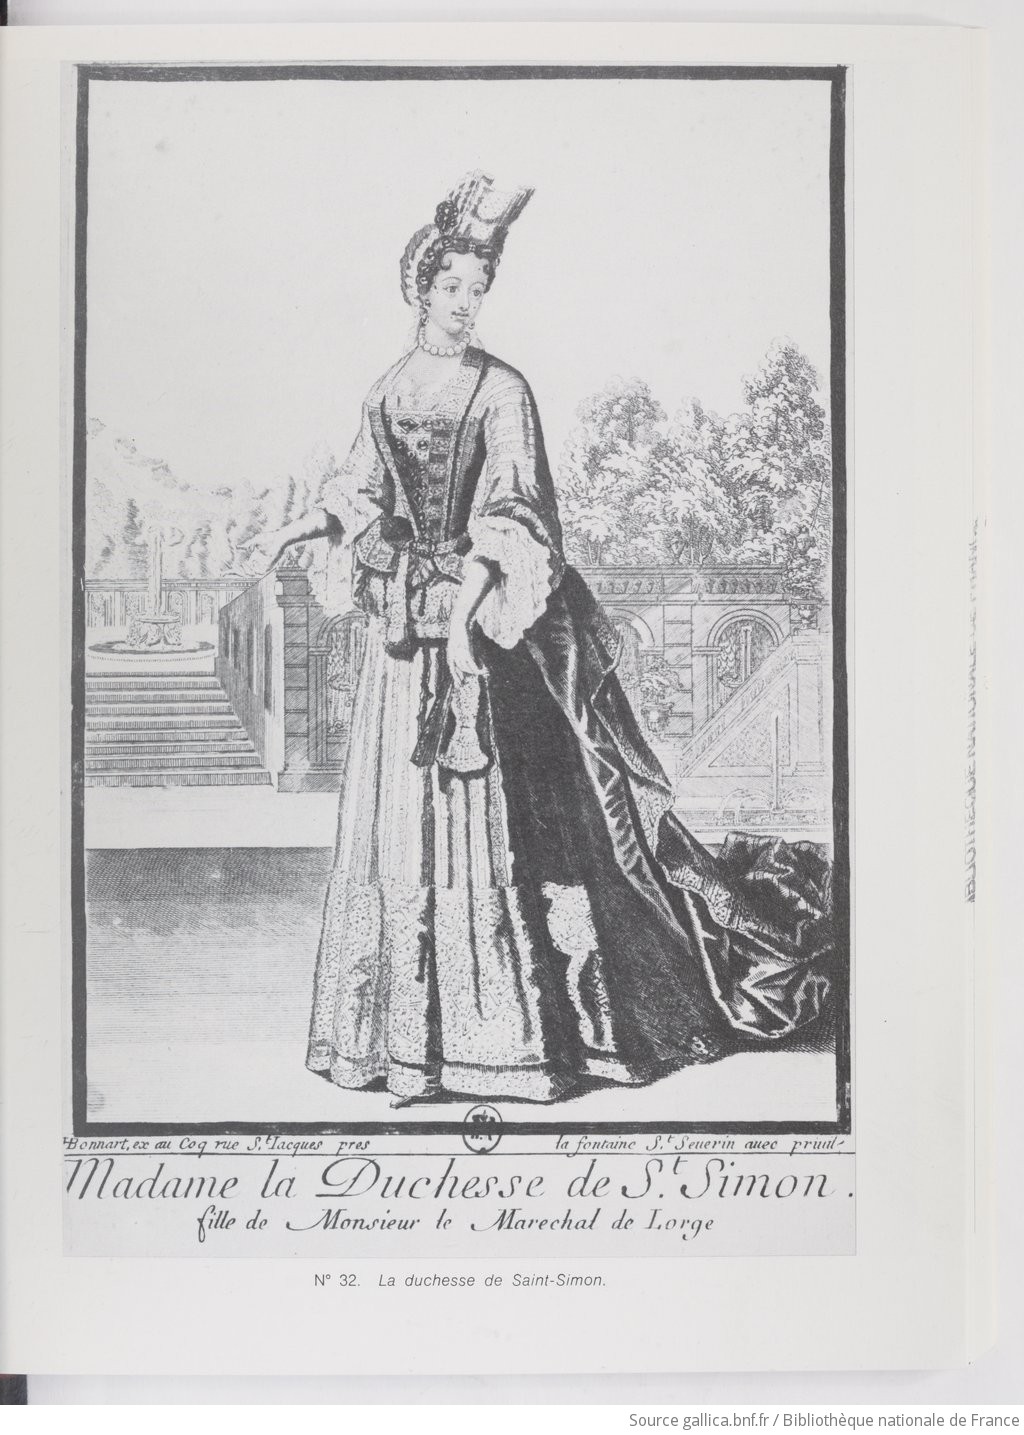 Bildergebnis für madame la duchesse de saint simon